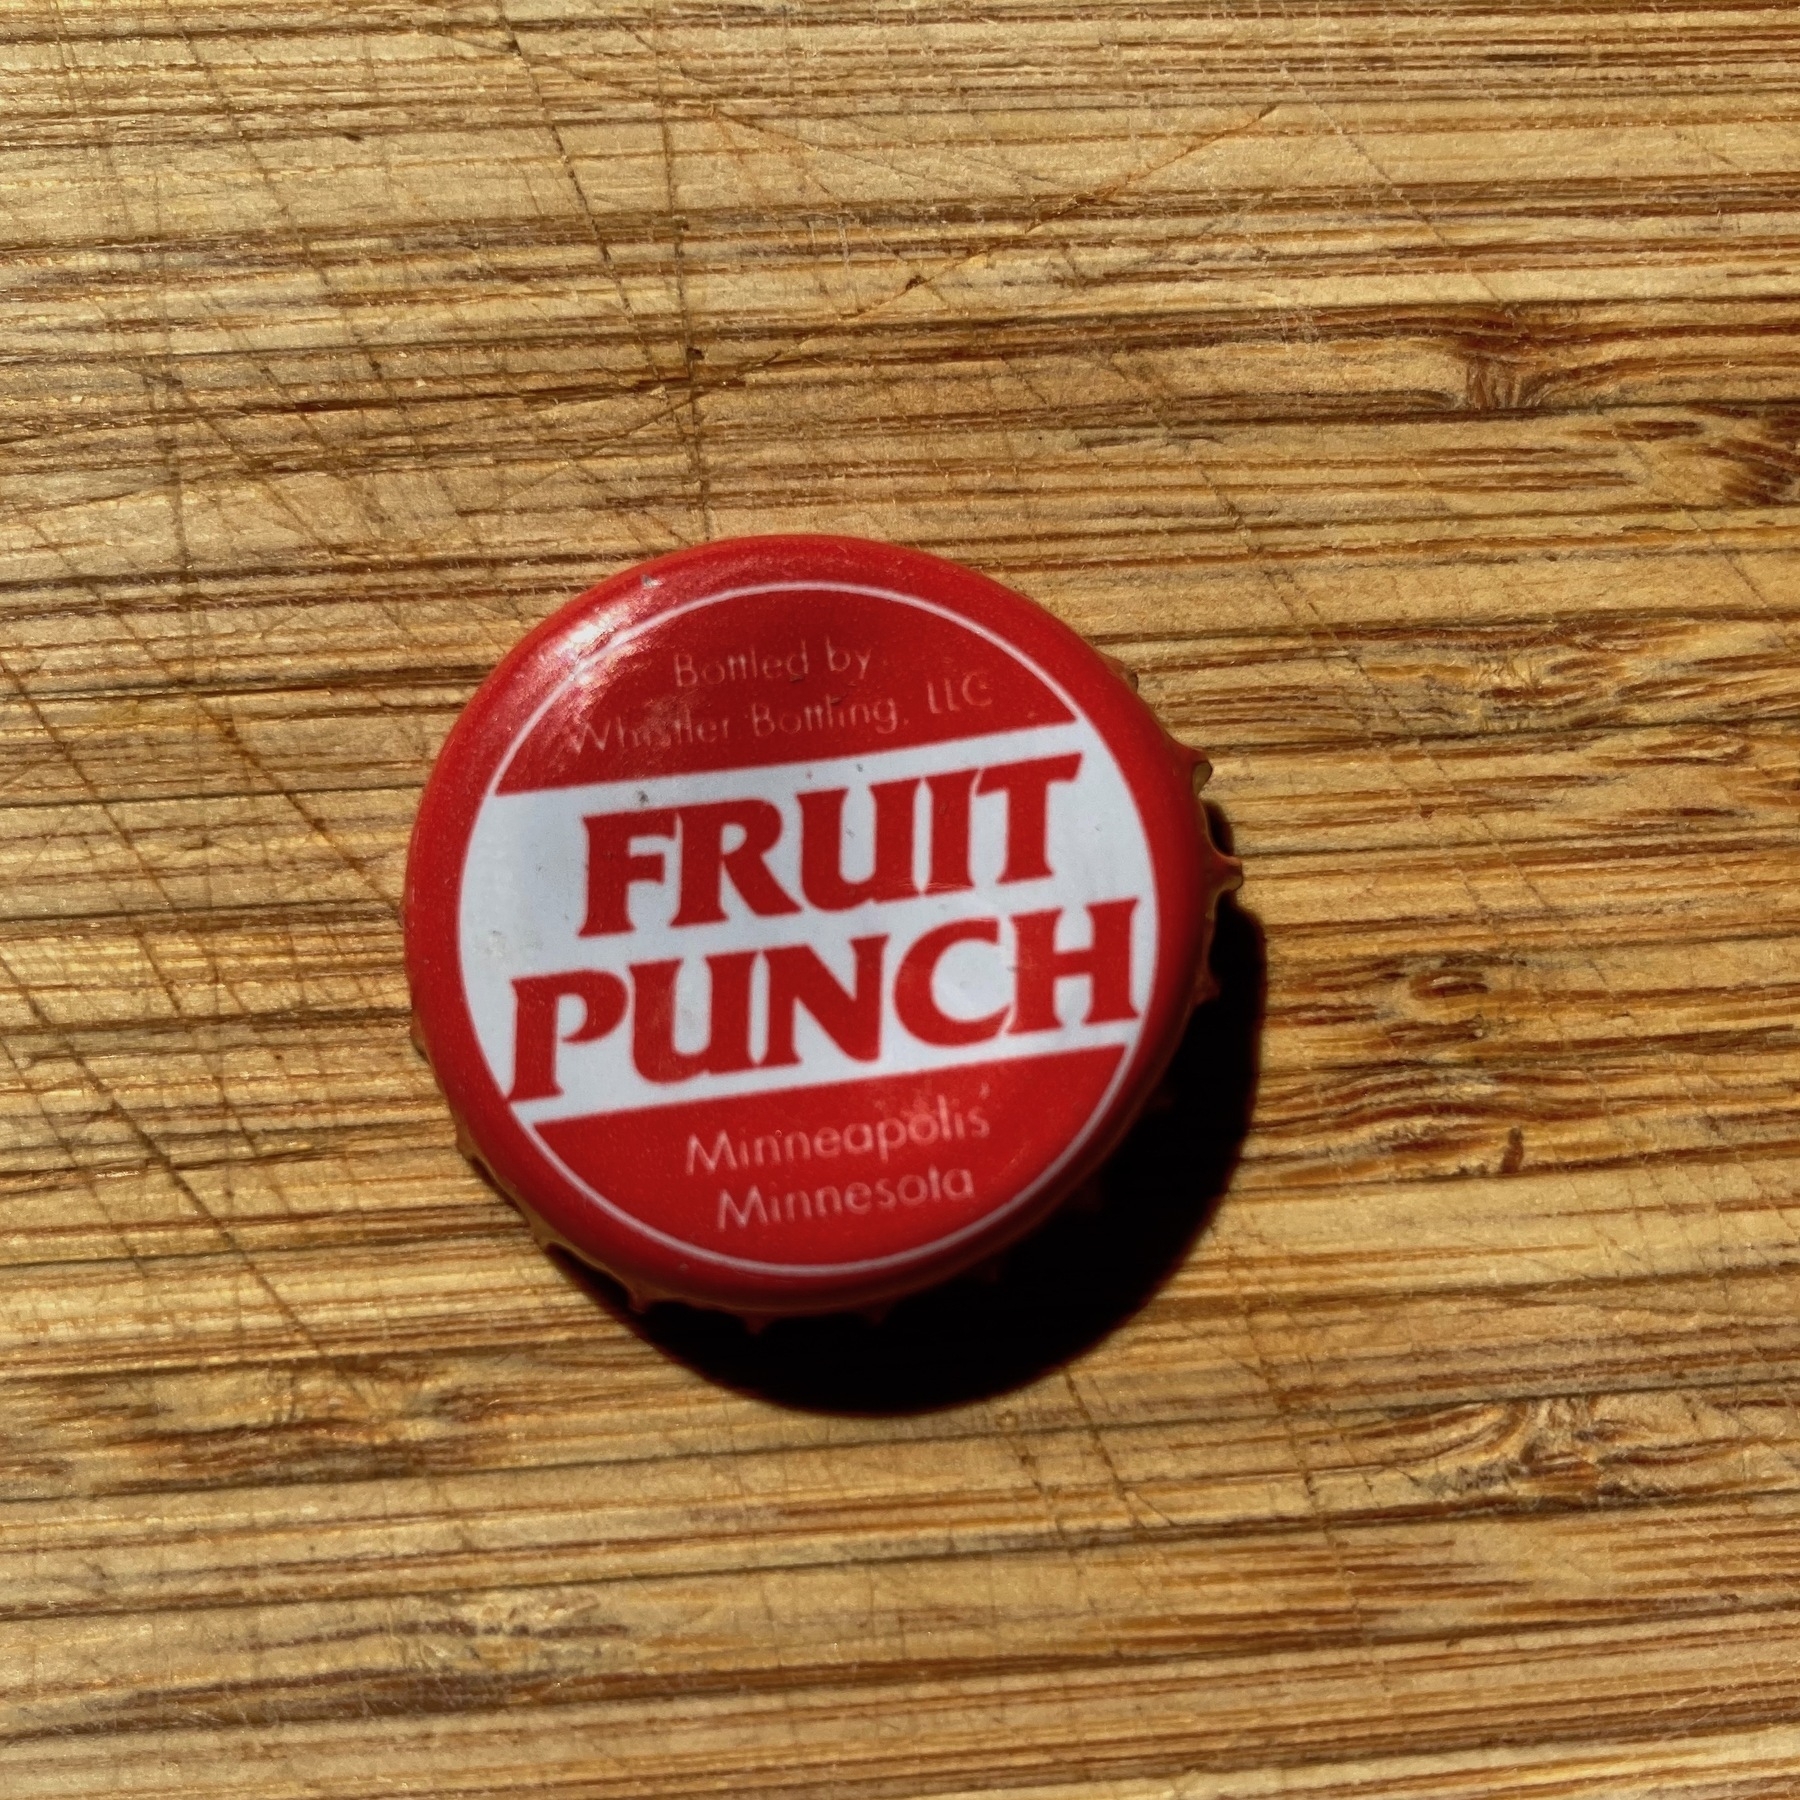 Old school soda pop bottle cap labeled "Fruit Punch"